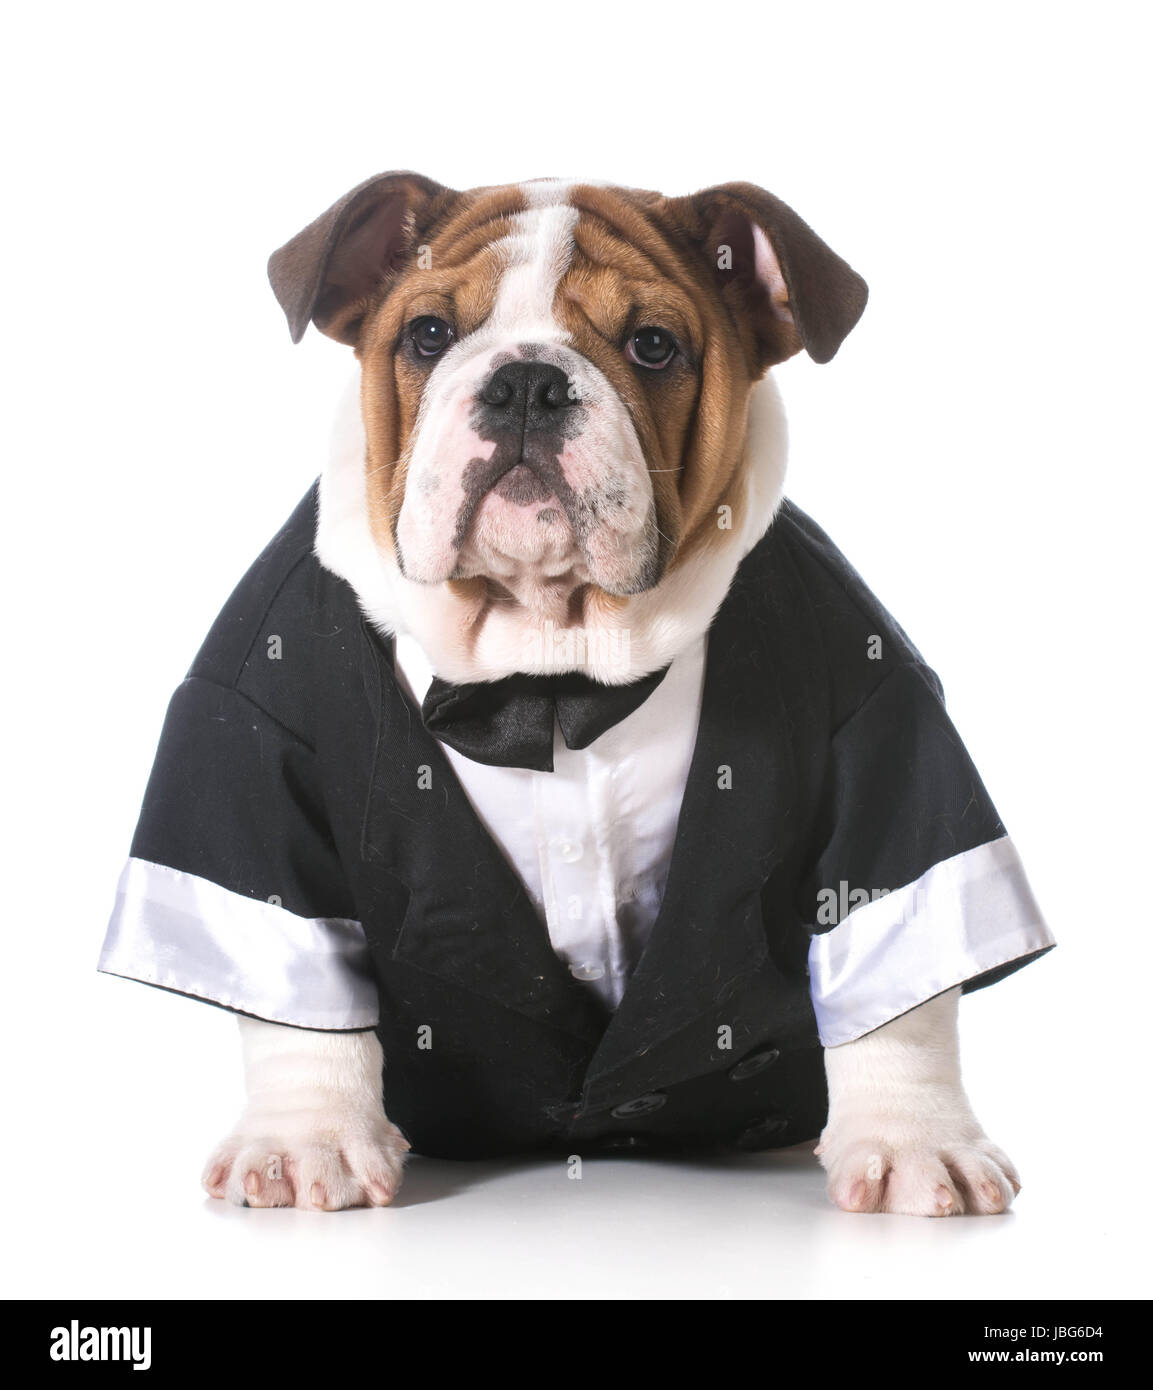 dog wearing tuxedo - english bulldog 3 months old Stock Photo - Alamy